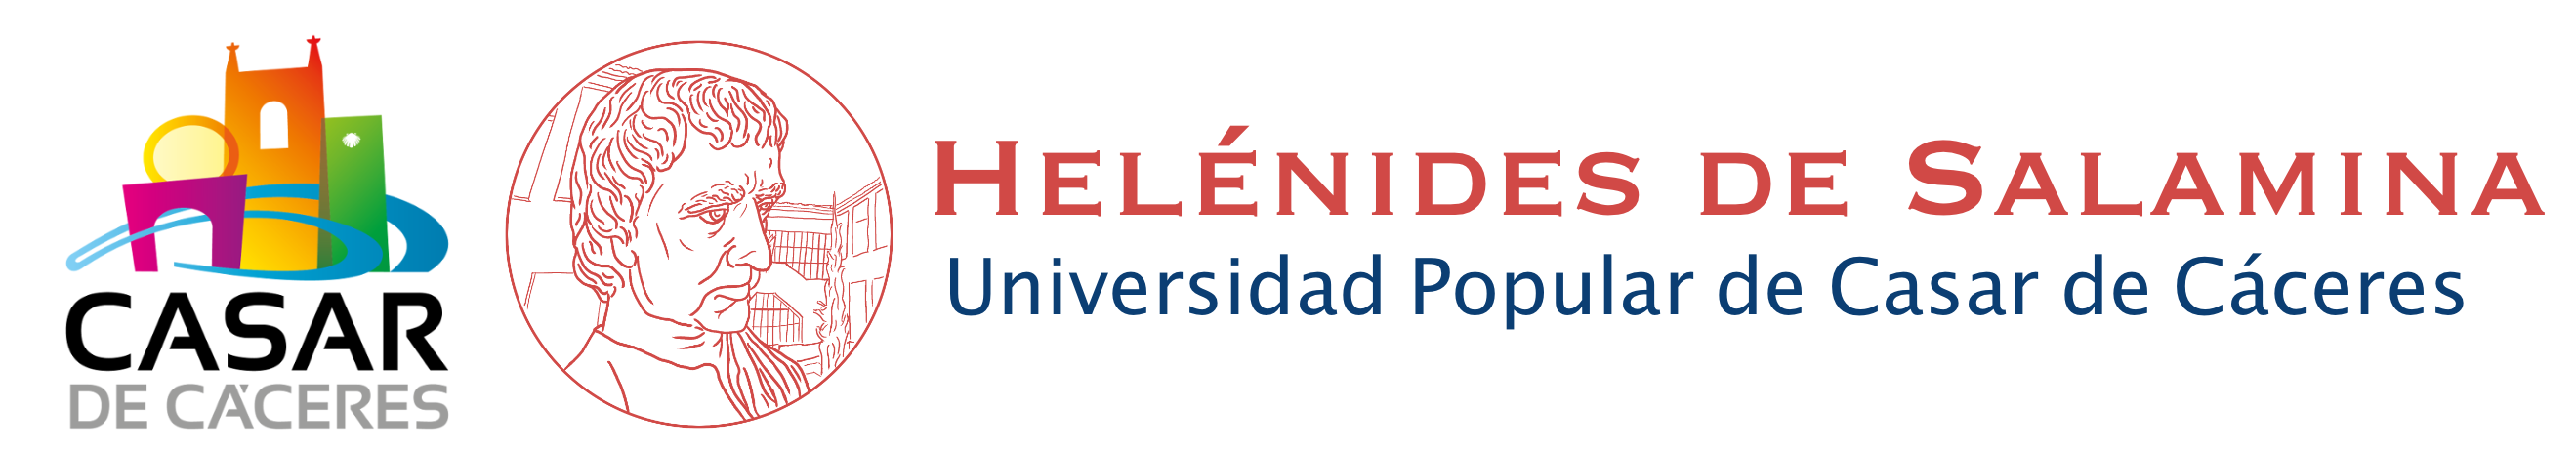 Universidad Popular "Helénides de Salamina"